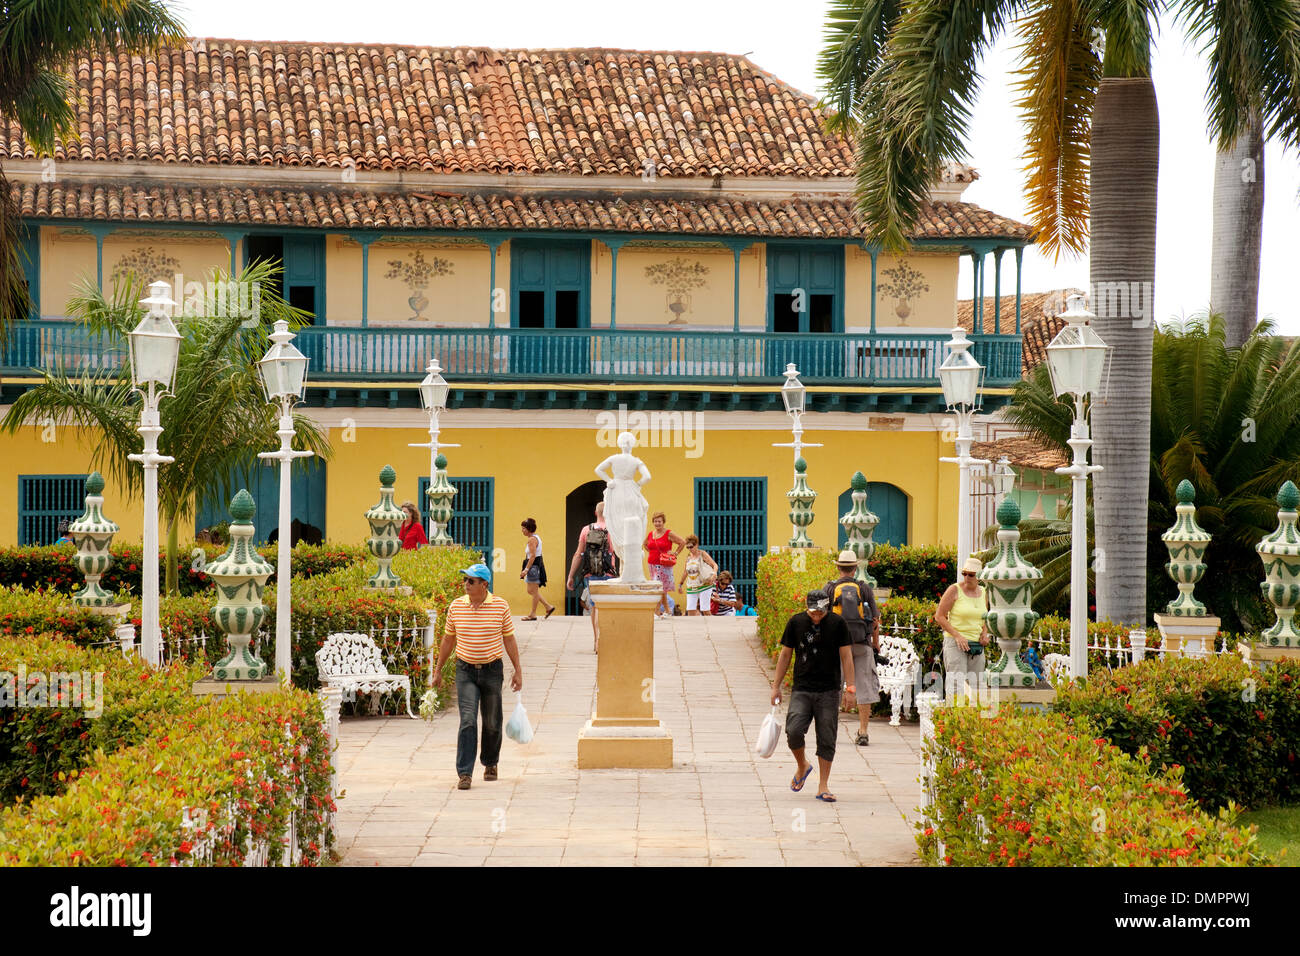 Les gens de la Plaza Mayor, le centre-ville de Trinidad Cuba Centre, site du patrimoine mondial de l'UNESCO, Cuba Caraïbes, Amérique Latine Banque D'Images